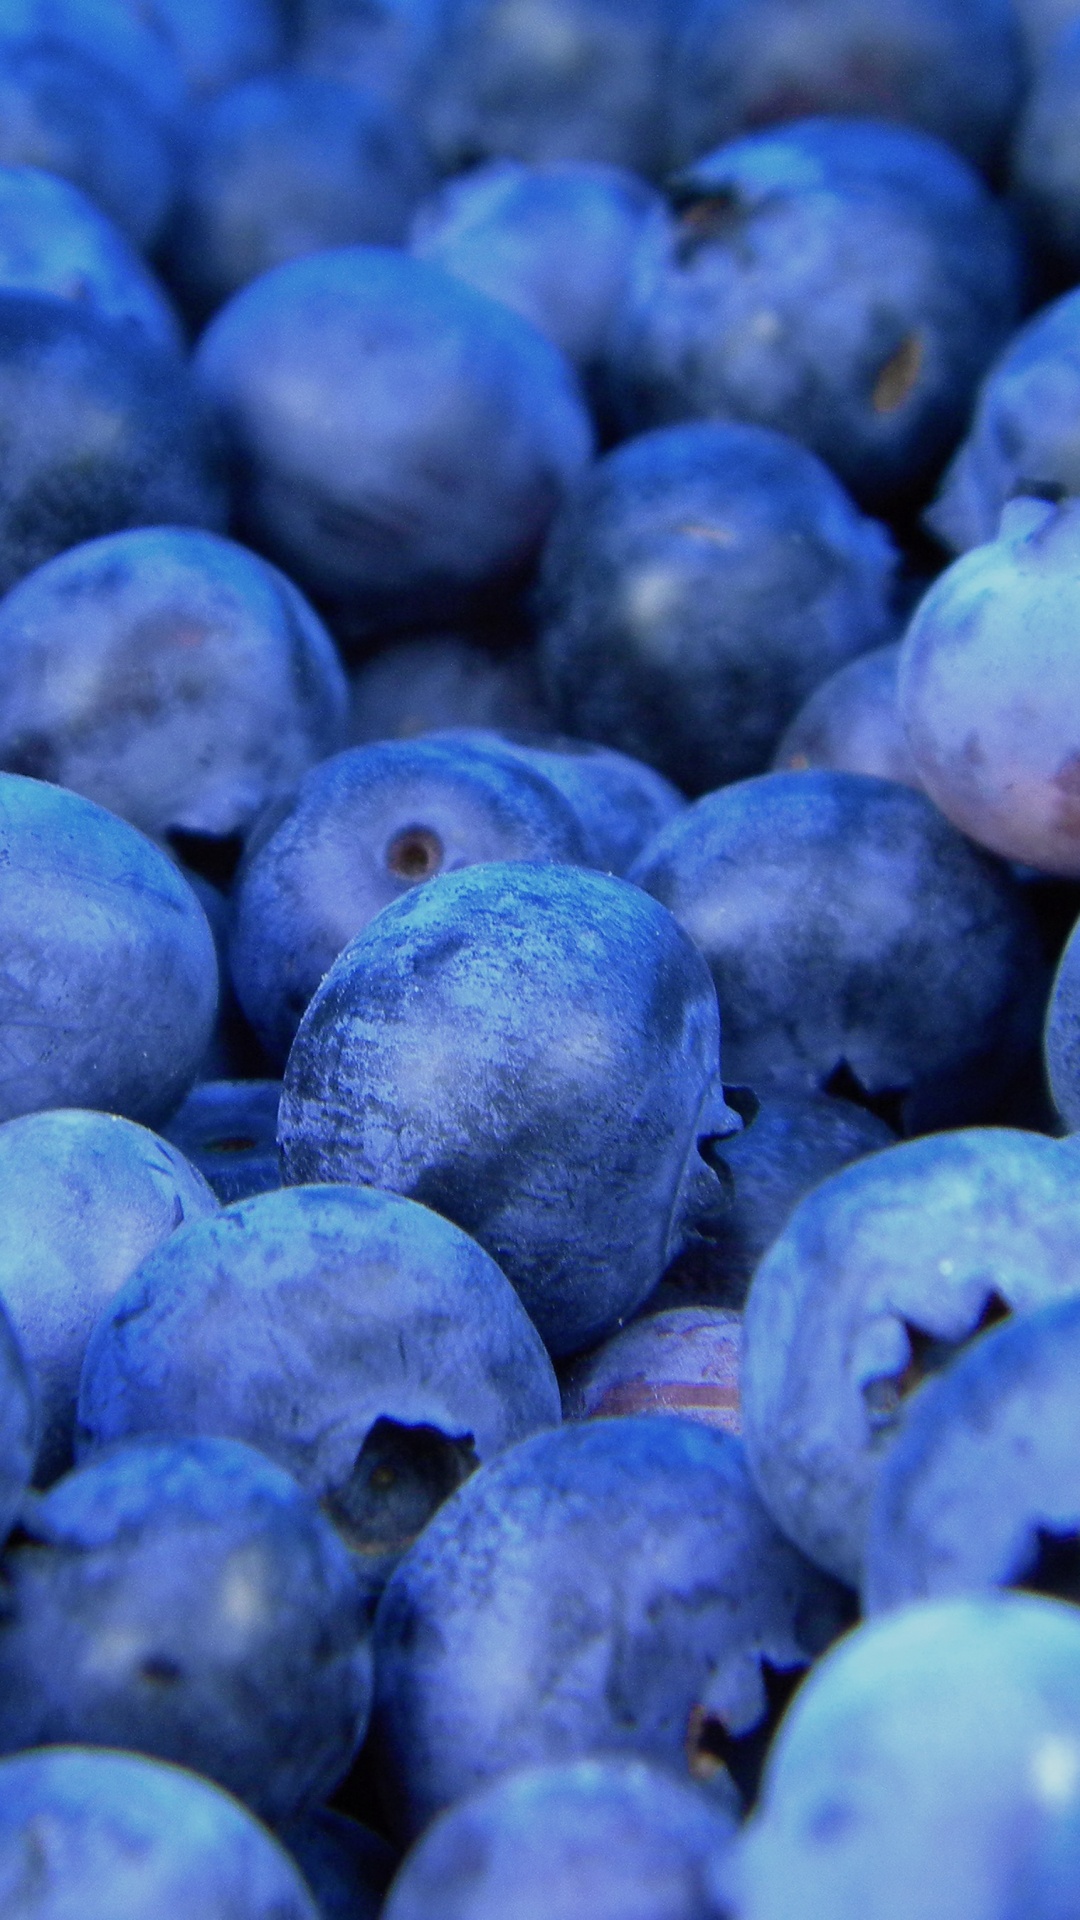 蓝莓, 无核果, 食品, 工厂, 味道 壁纸 1080x1920 允许